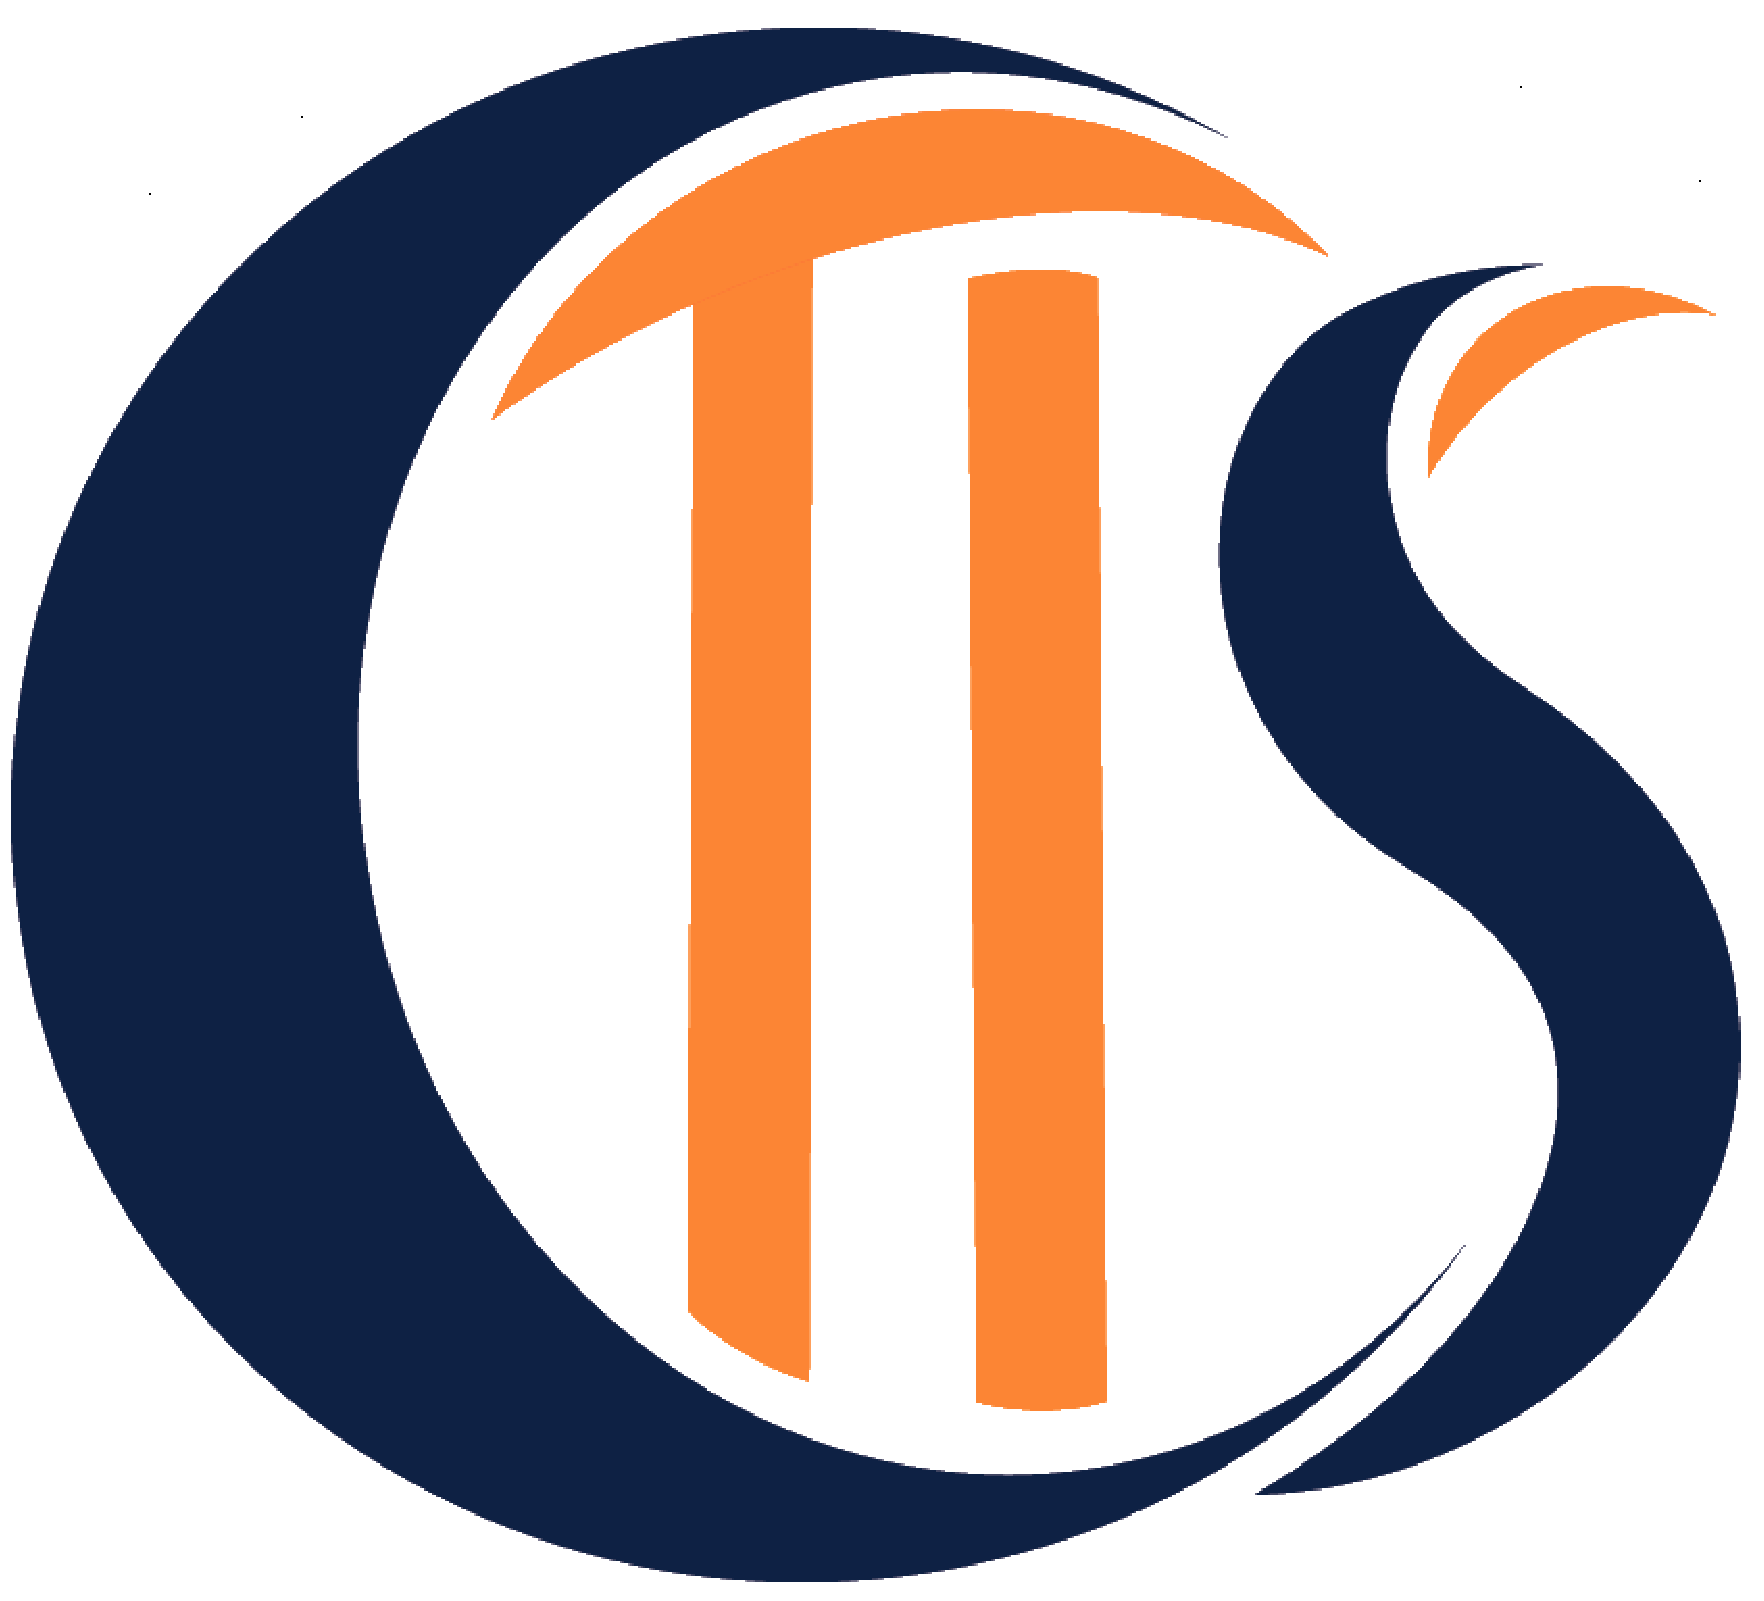 CTIS_logo2.png